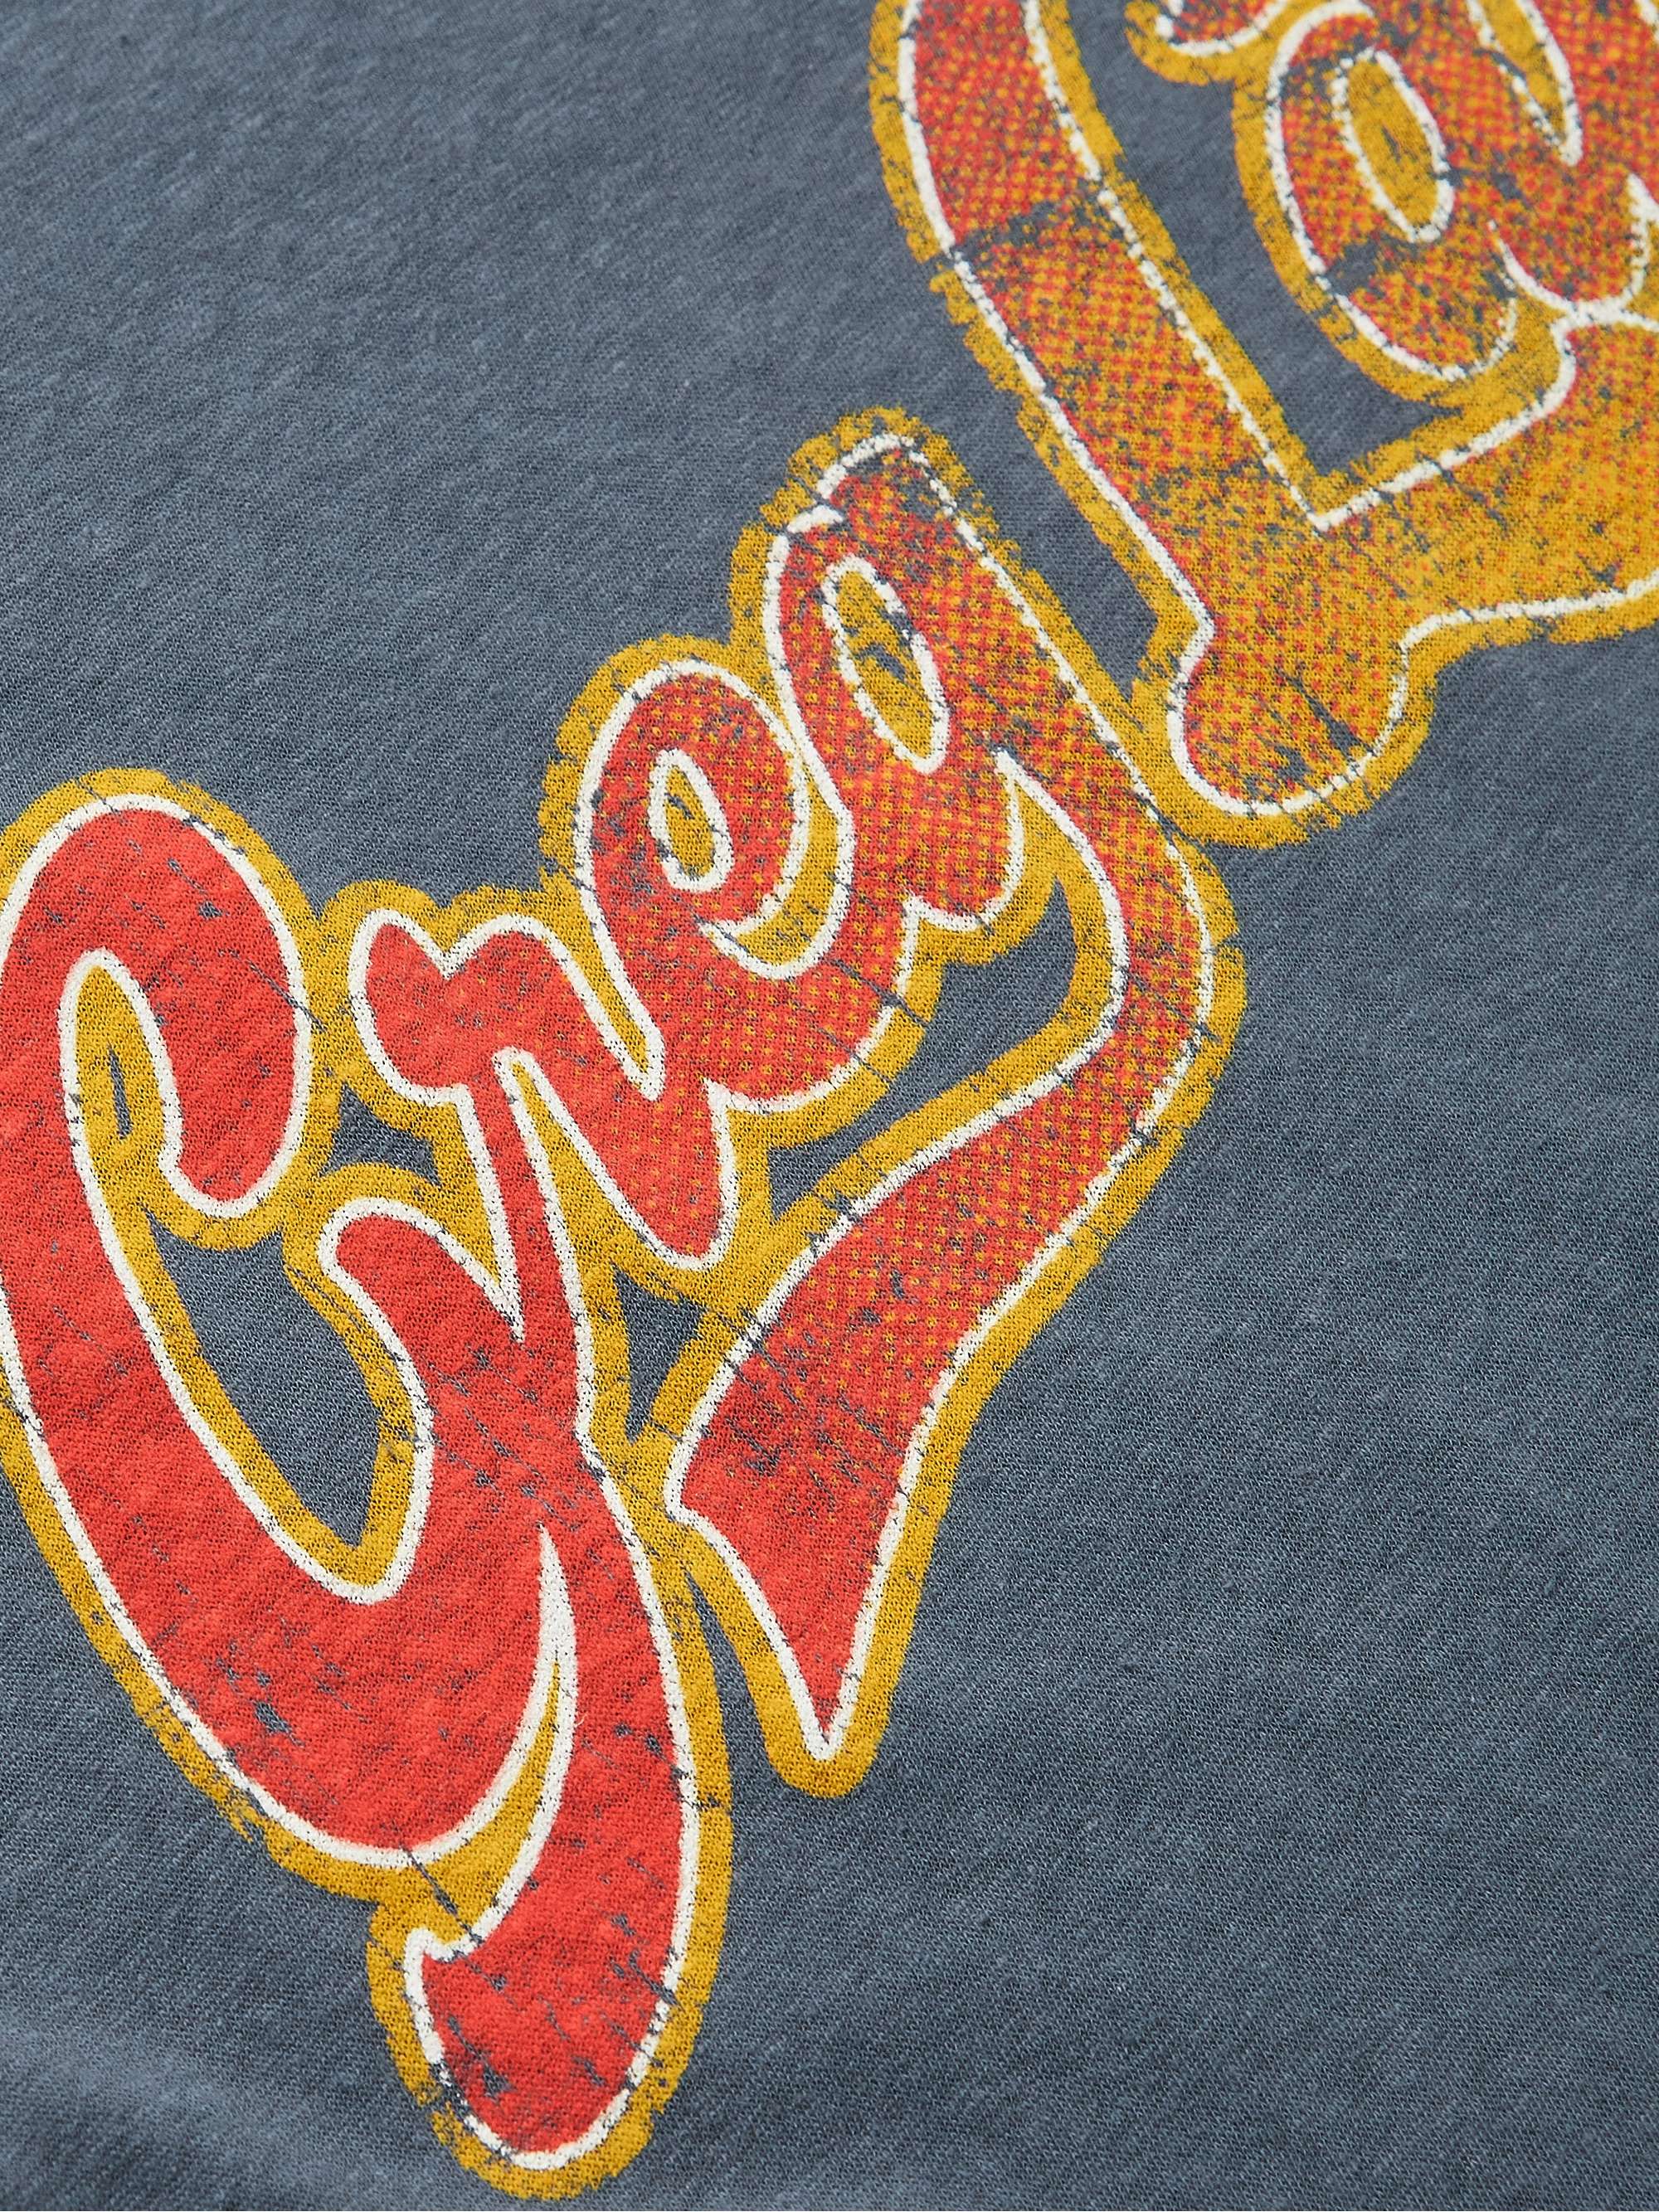 GREG LAUREN Logo-Print Recycled Cotton-Jersey T-Shirt